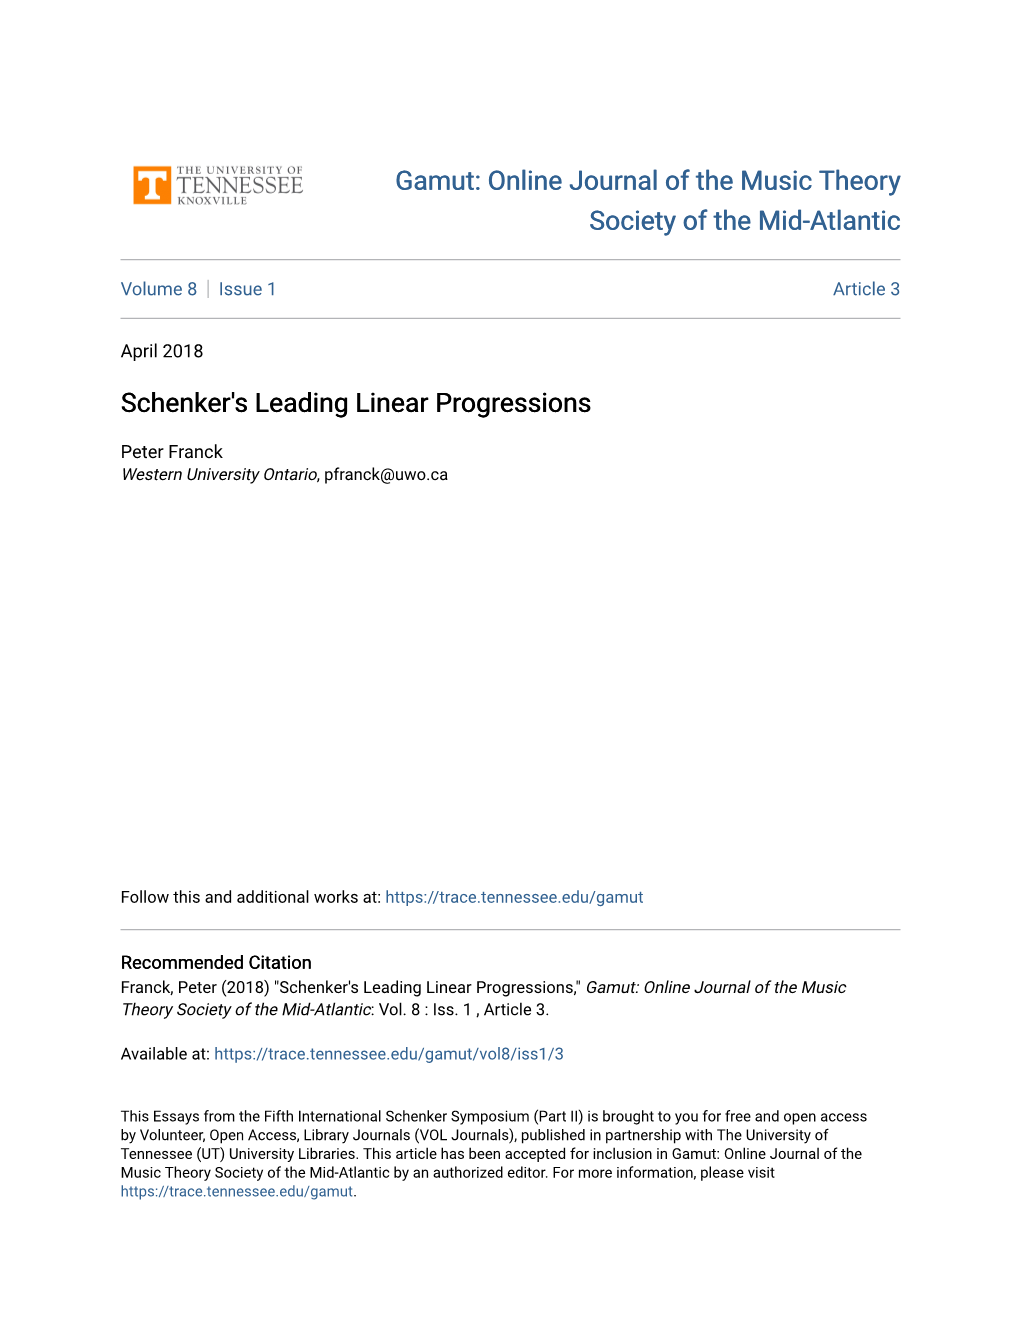 Schenker's Leading Linear Progressions